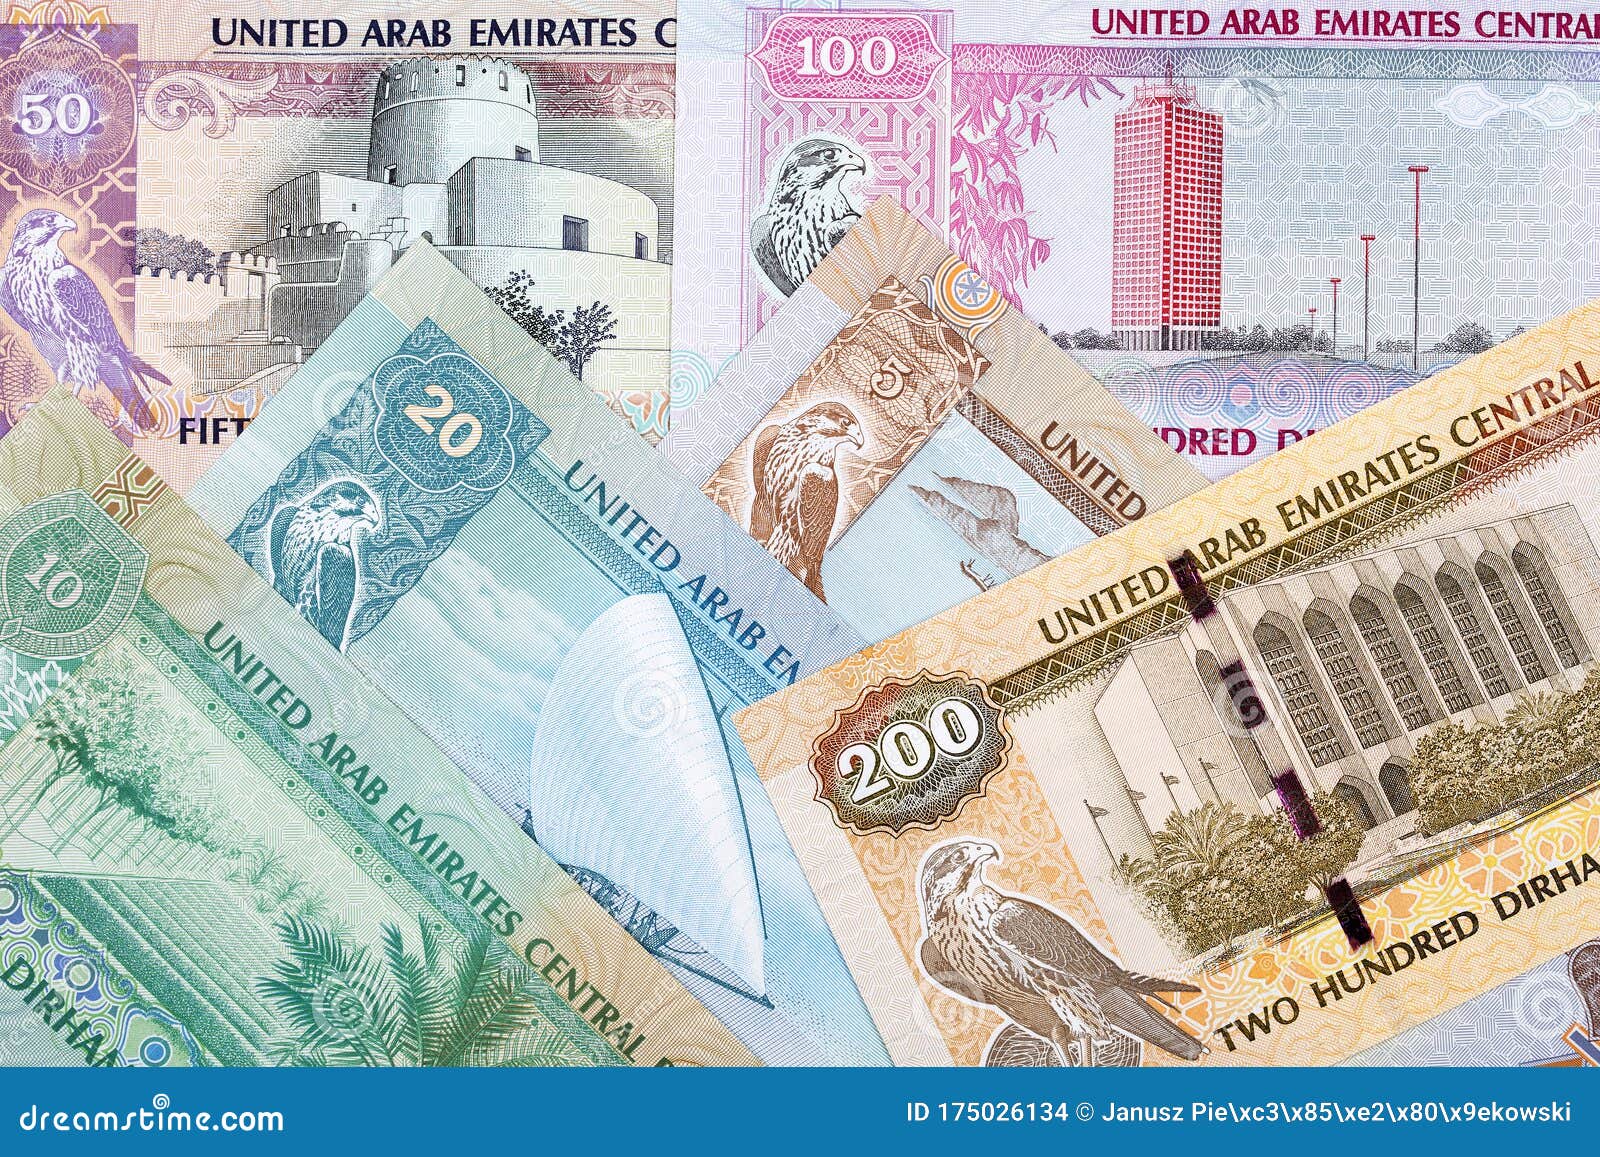 Рубль дирхам курс на сегодня в дубае. Валюта Эмиратов. Деньги ОАЭ. Дирхамы ОАЭ. Национальная валюта Дубая.